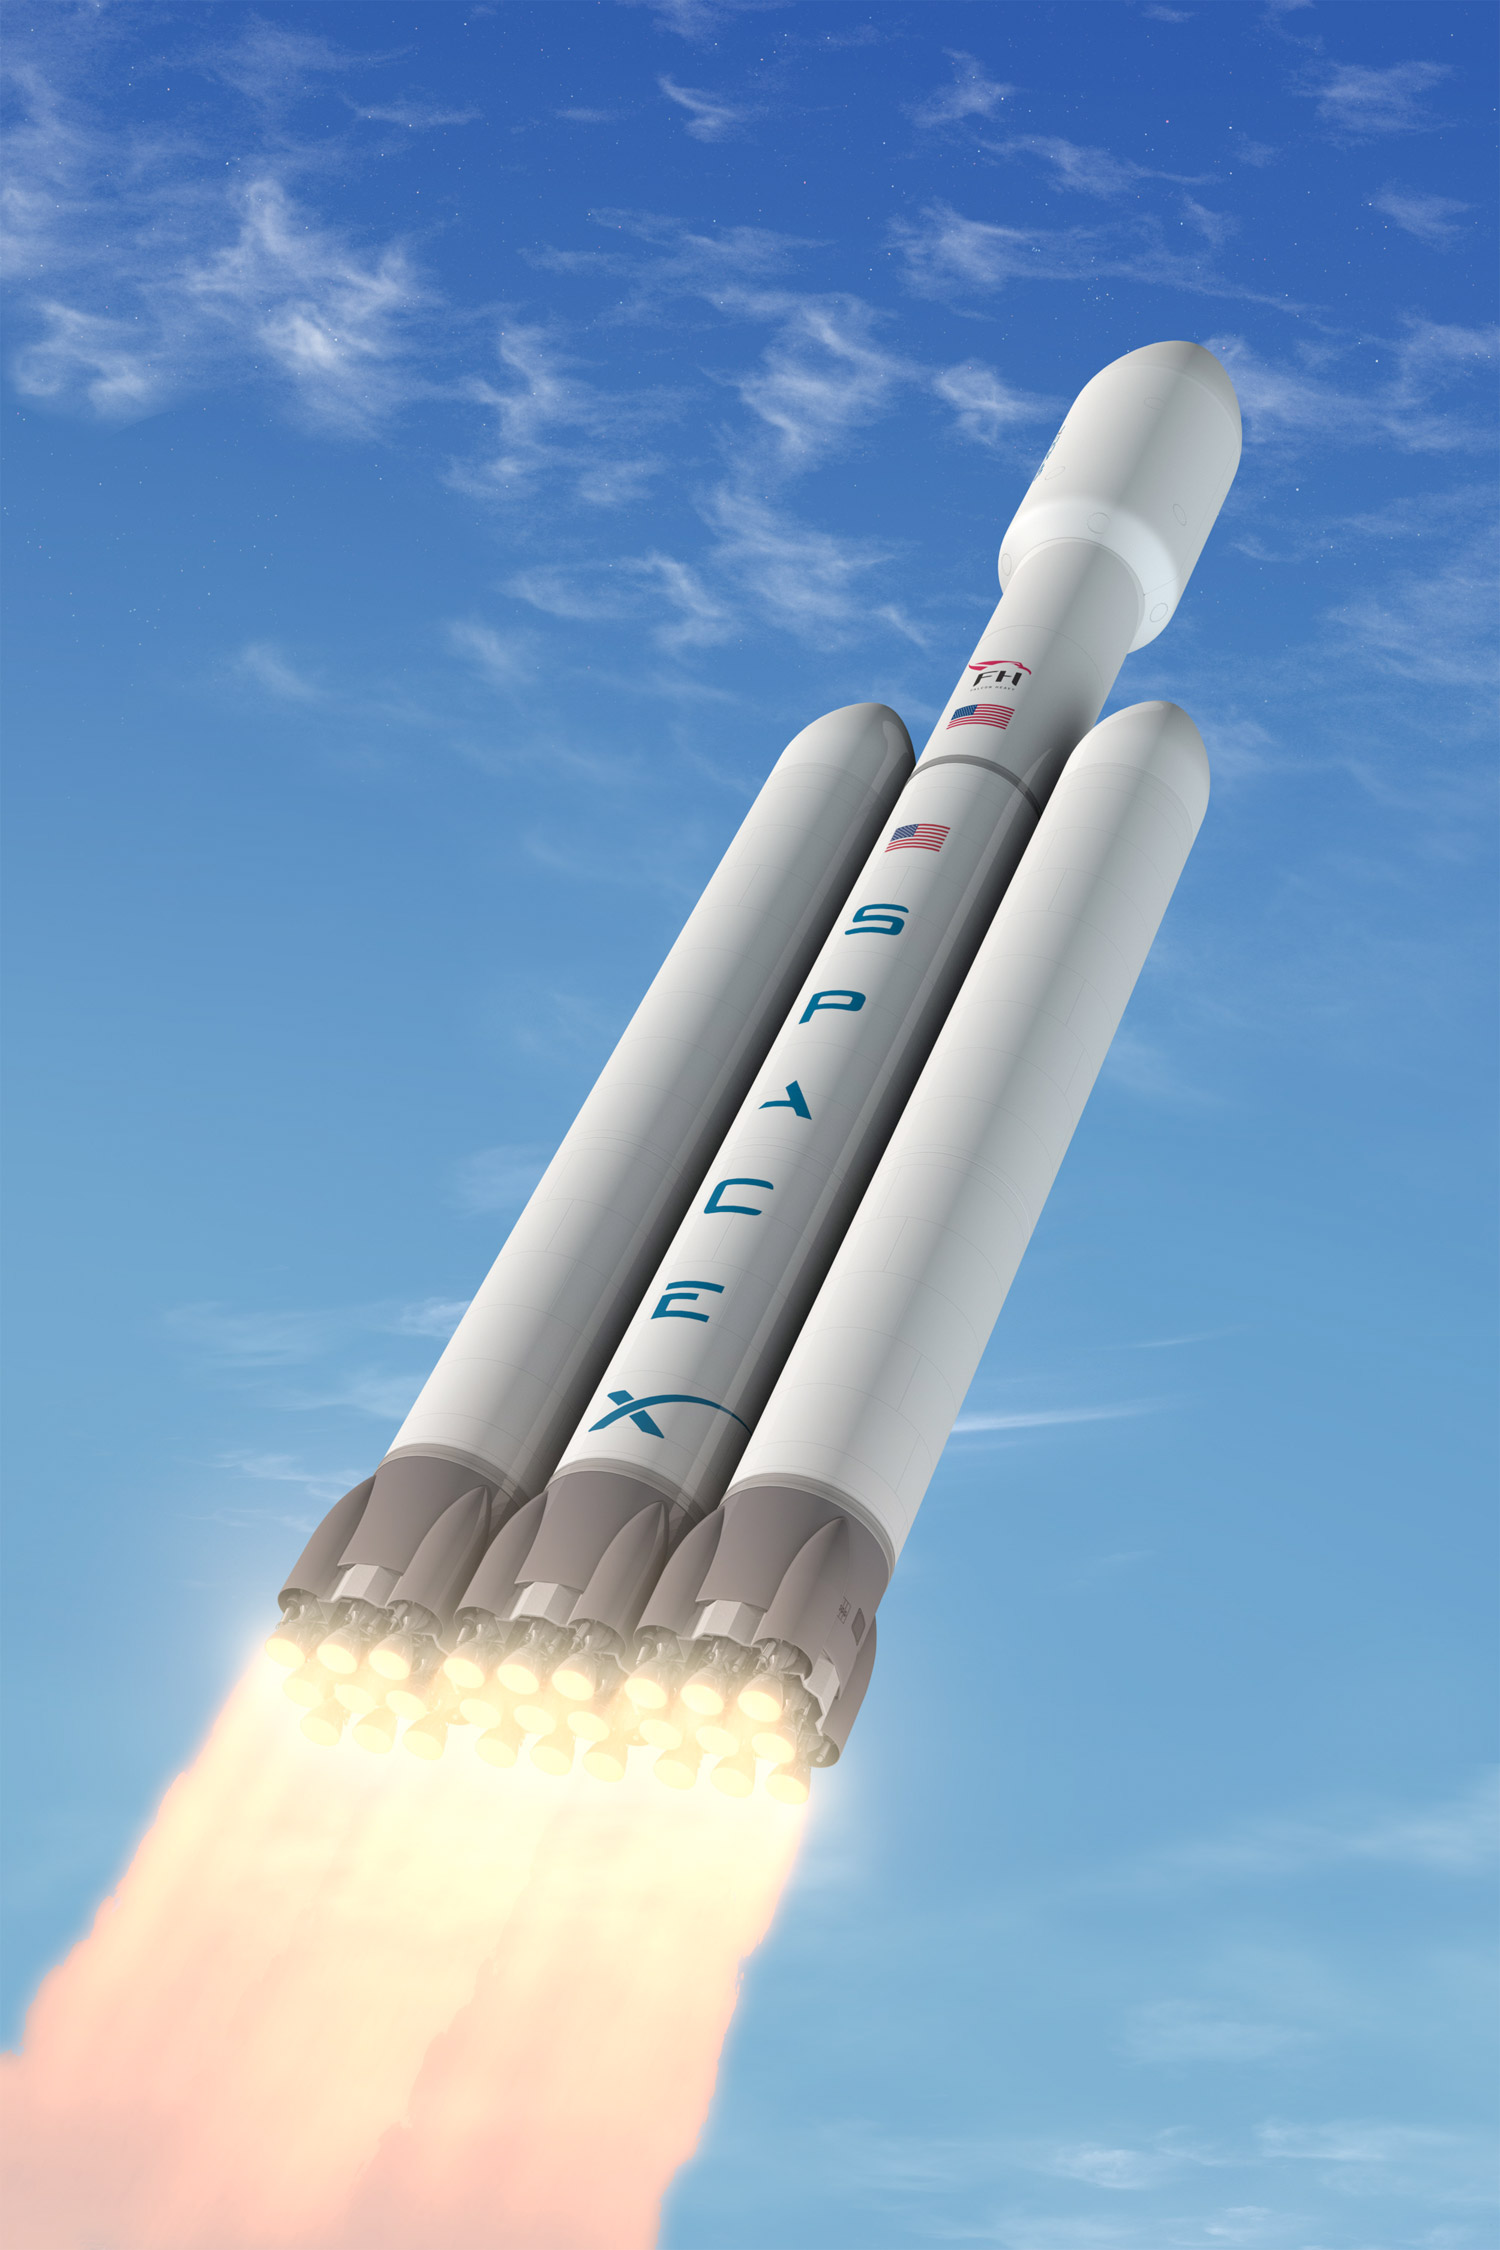 D'une hauteur de 69,2 mètres pour un poids total de 1.400 tonnes au lancement, le Falcon Heavy est un lanceur en ligne à deux étages doté d'une coiffe de 5,2 mètres de diamètre. Au décollage, il développera une poussée totale de 1.700 tonnes. © SpaceX